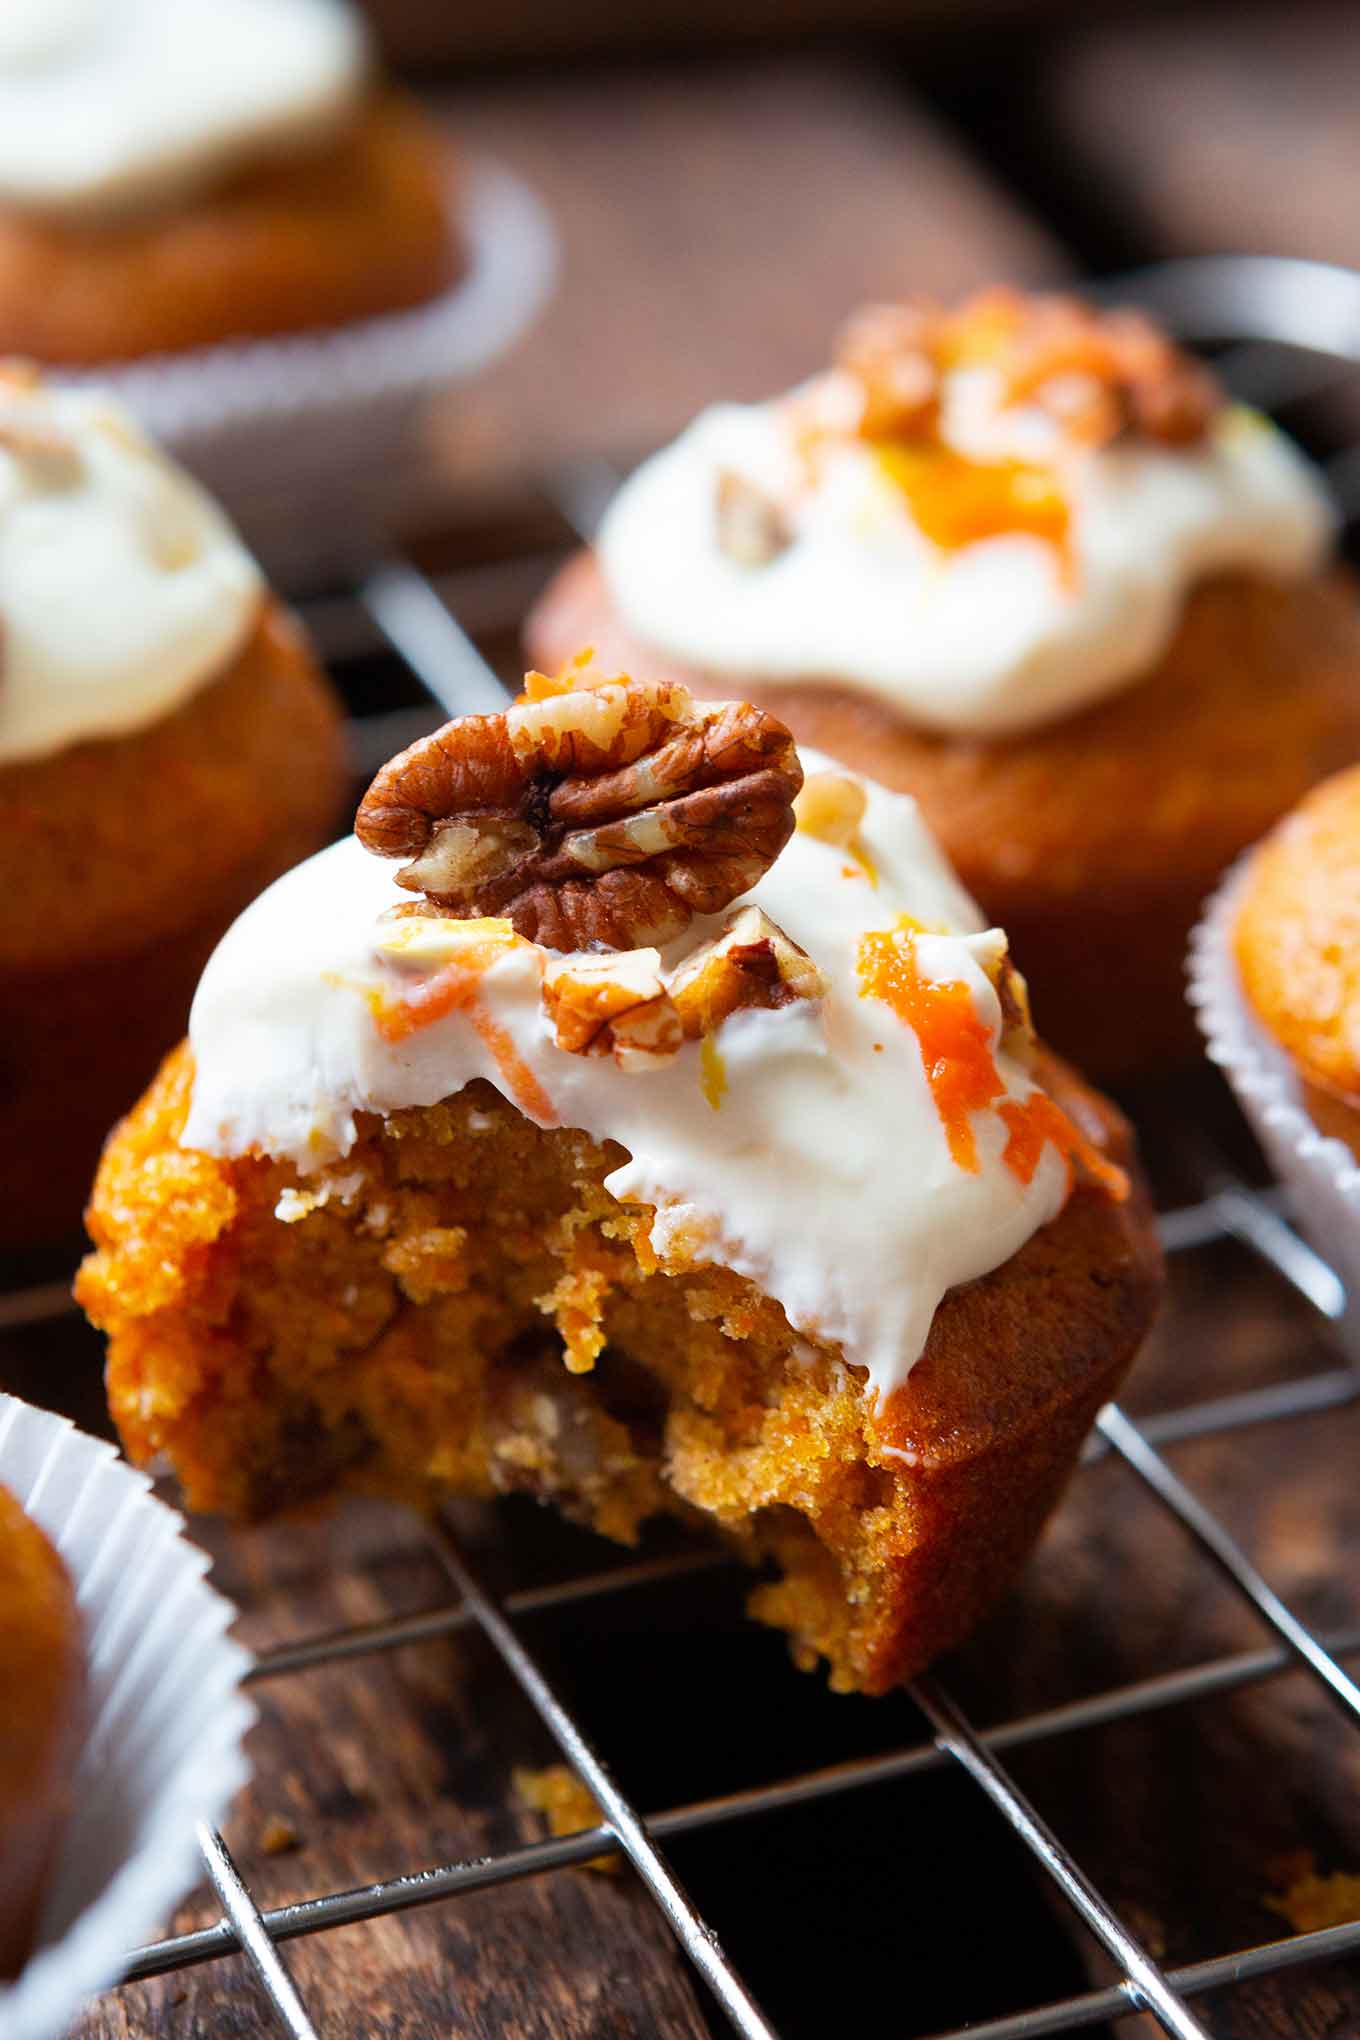 Werbung. Carrot Cake Muffins. Diese einfachen Karotten Muffins mit Creme Fraiche Topping sind saftig und das perfekte Rezept für Kinder! Sooo gut! - Kochkarussell.com #rezept #muffins #einfach #carrotcake #kochkarussell